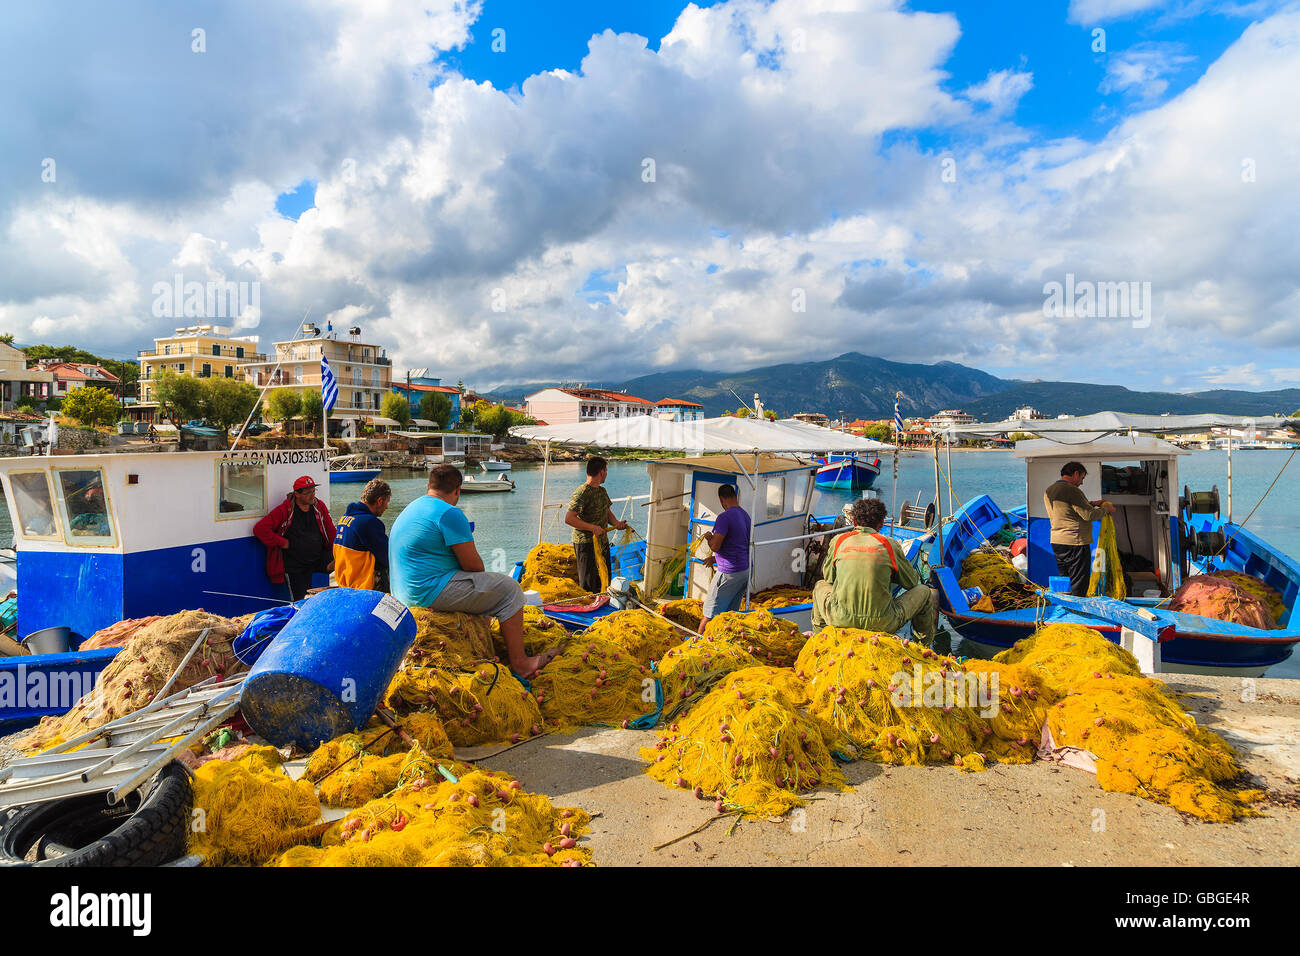 Isola di Samos, Grecia - Sep 23, 2015: pescatore riparare reti nella porta sul pomeriggio soleggiato. Le isole greche sono famosi per la tradizione Foto Stock